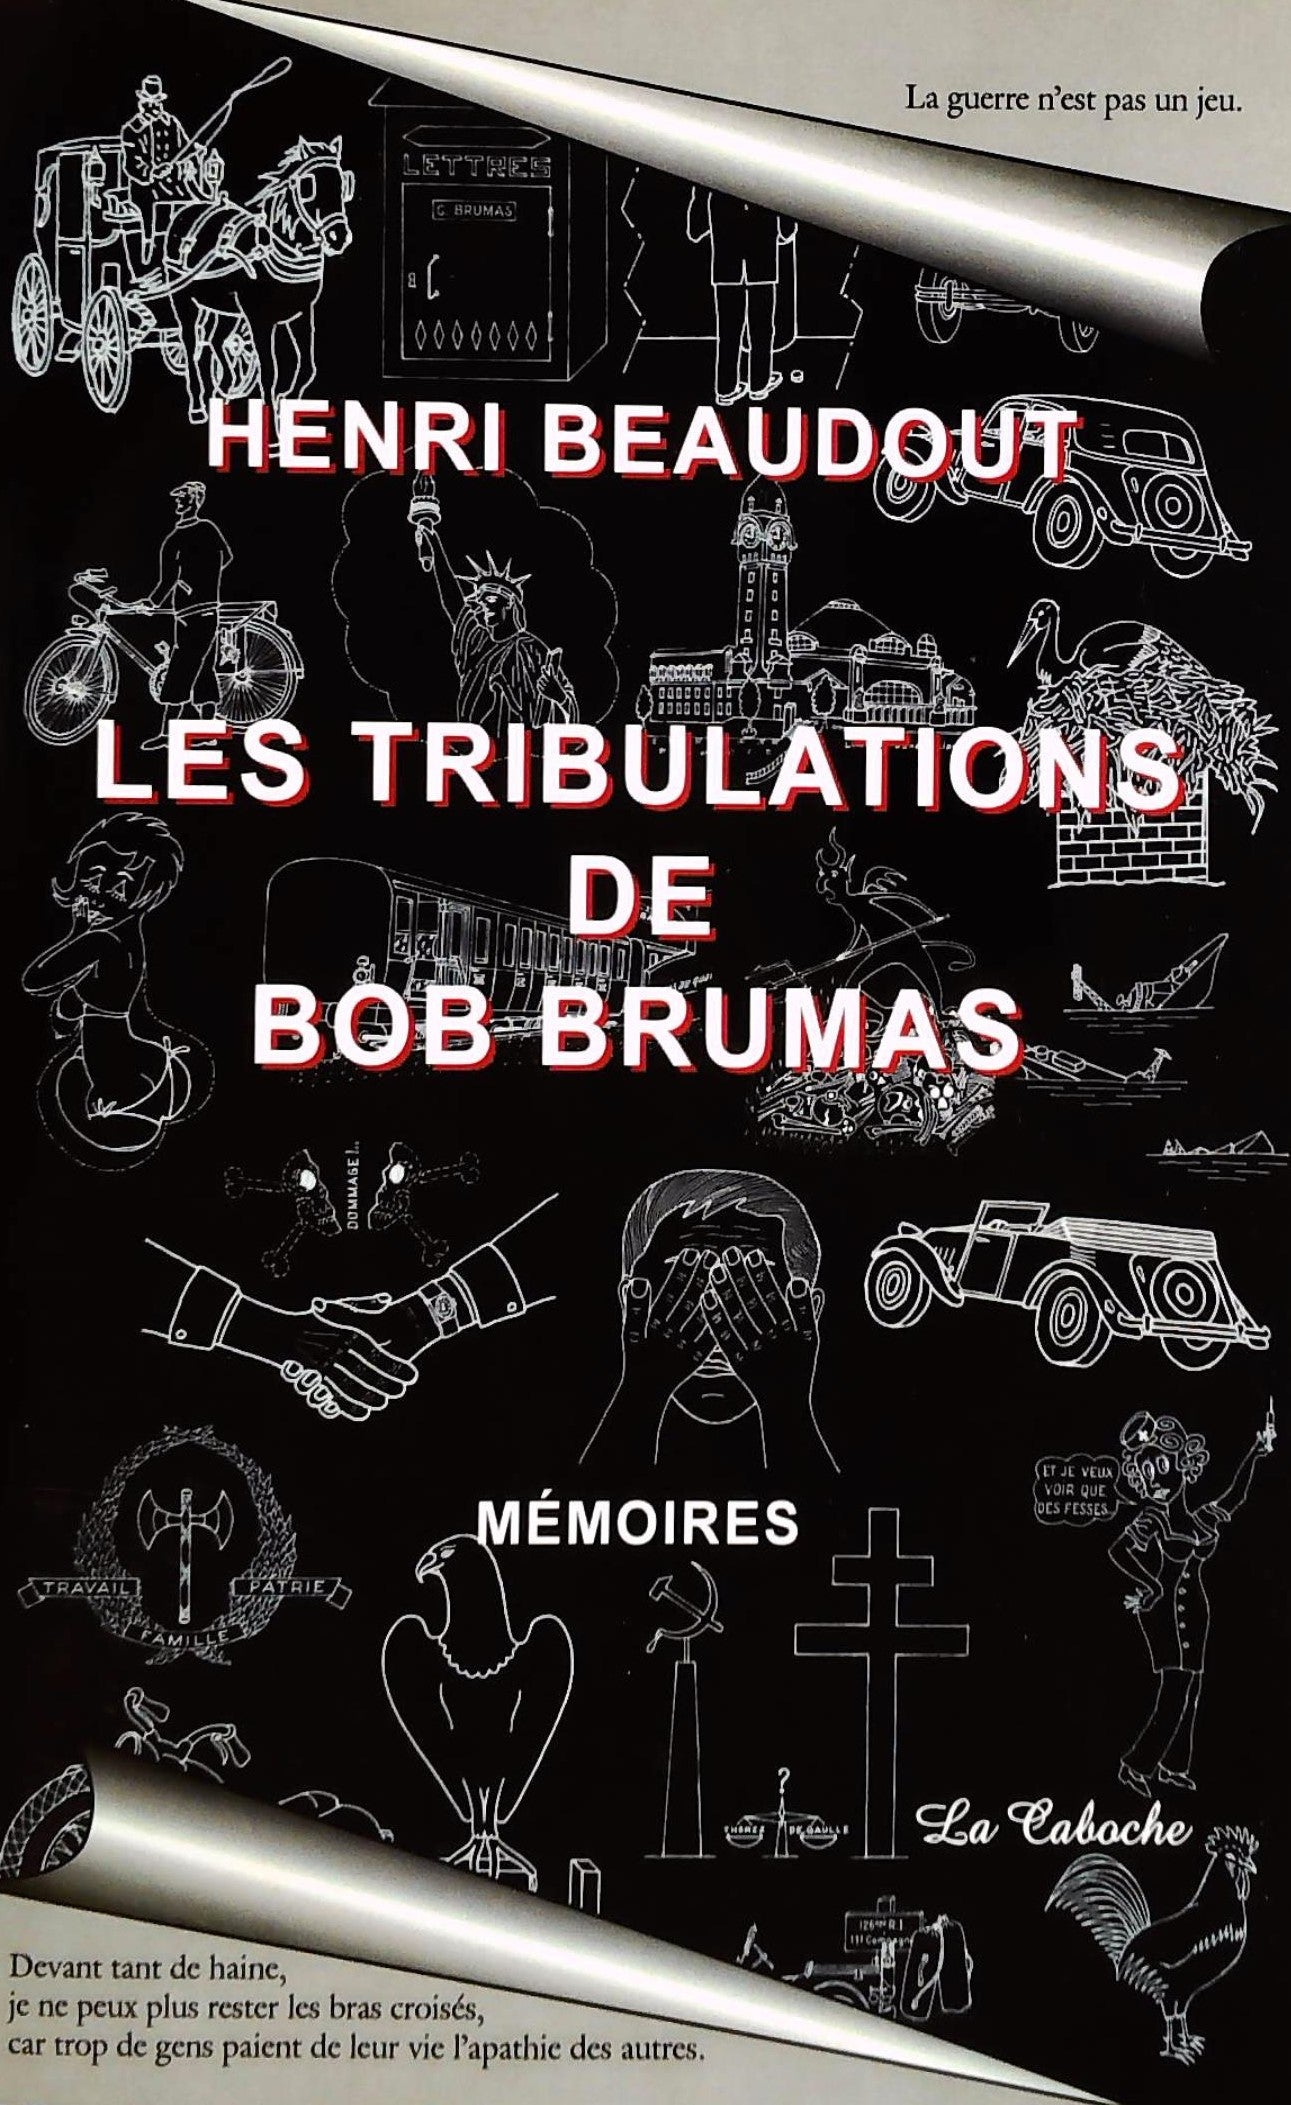 Livre ISBN 292344714X Les tribulations de Bob Brumas : mémoires (Henri Beaudout)